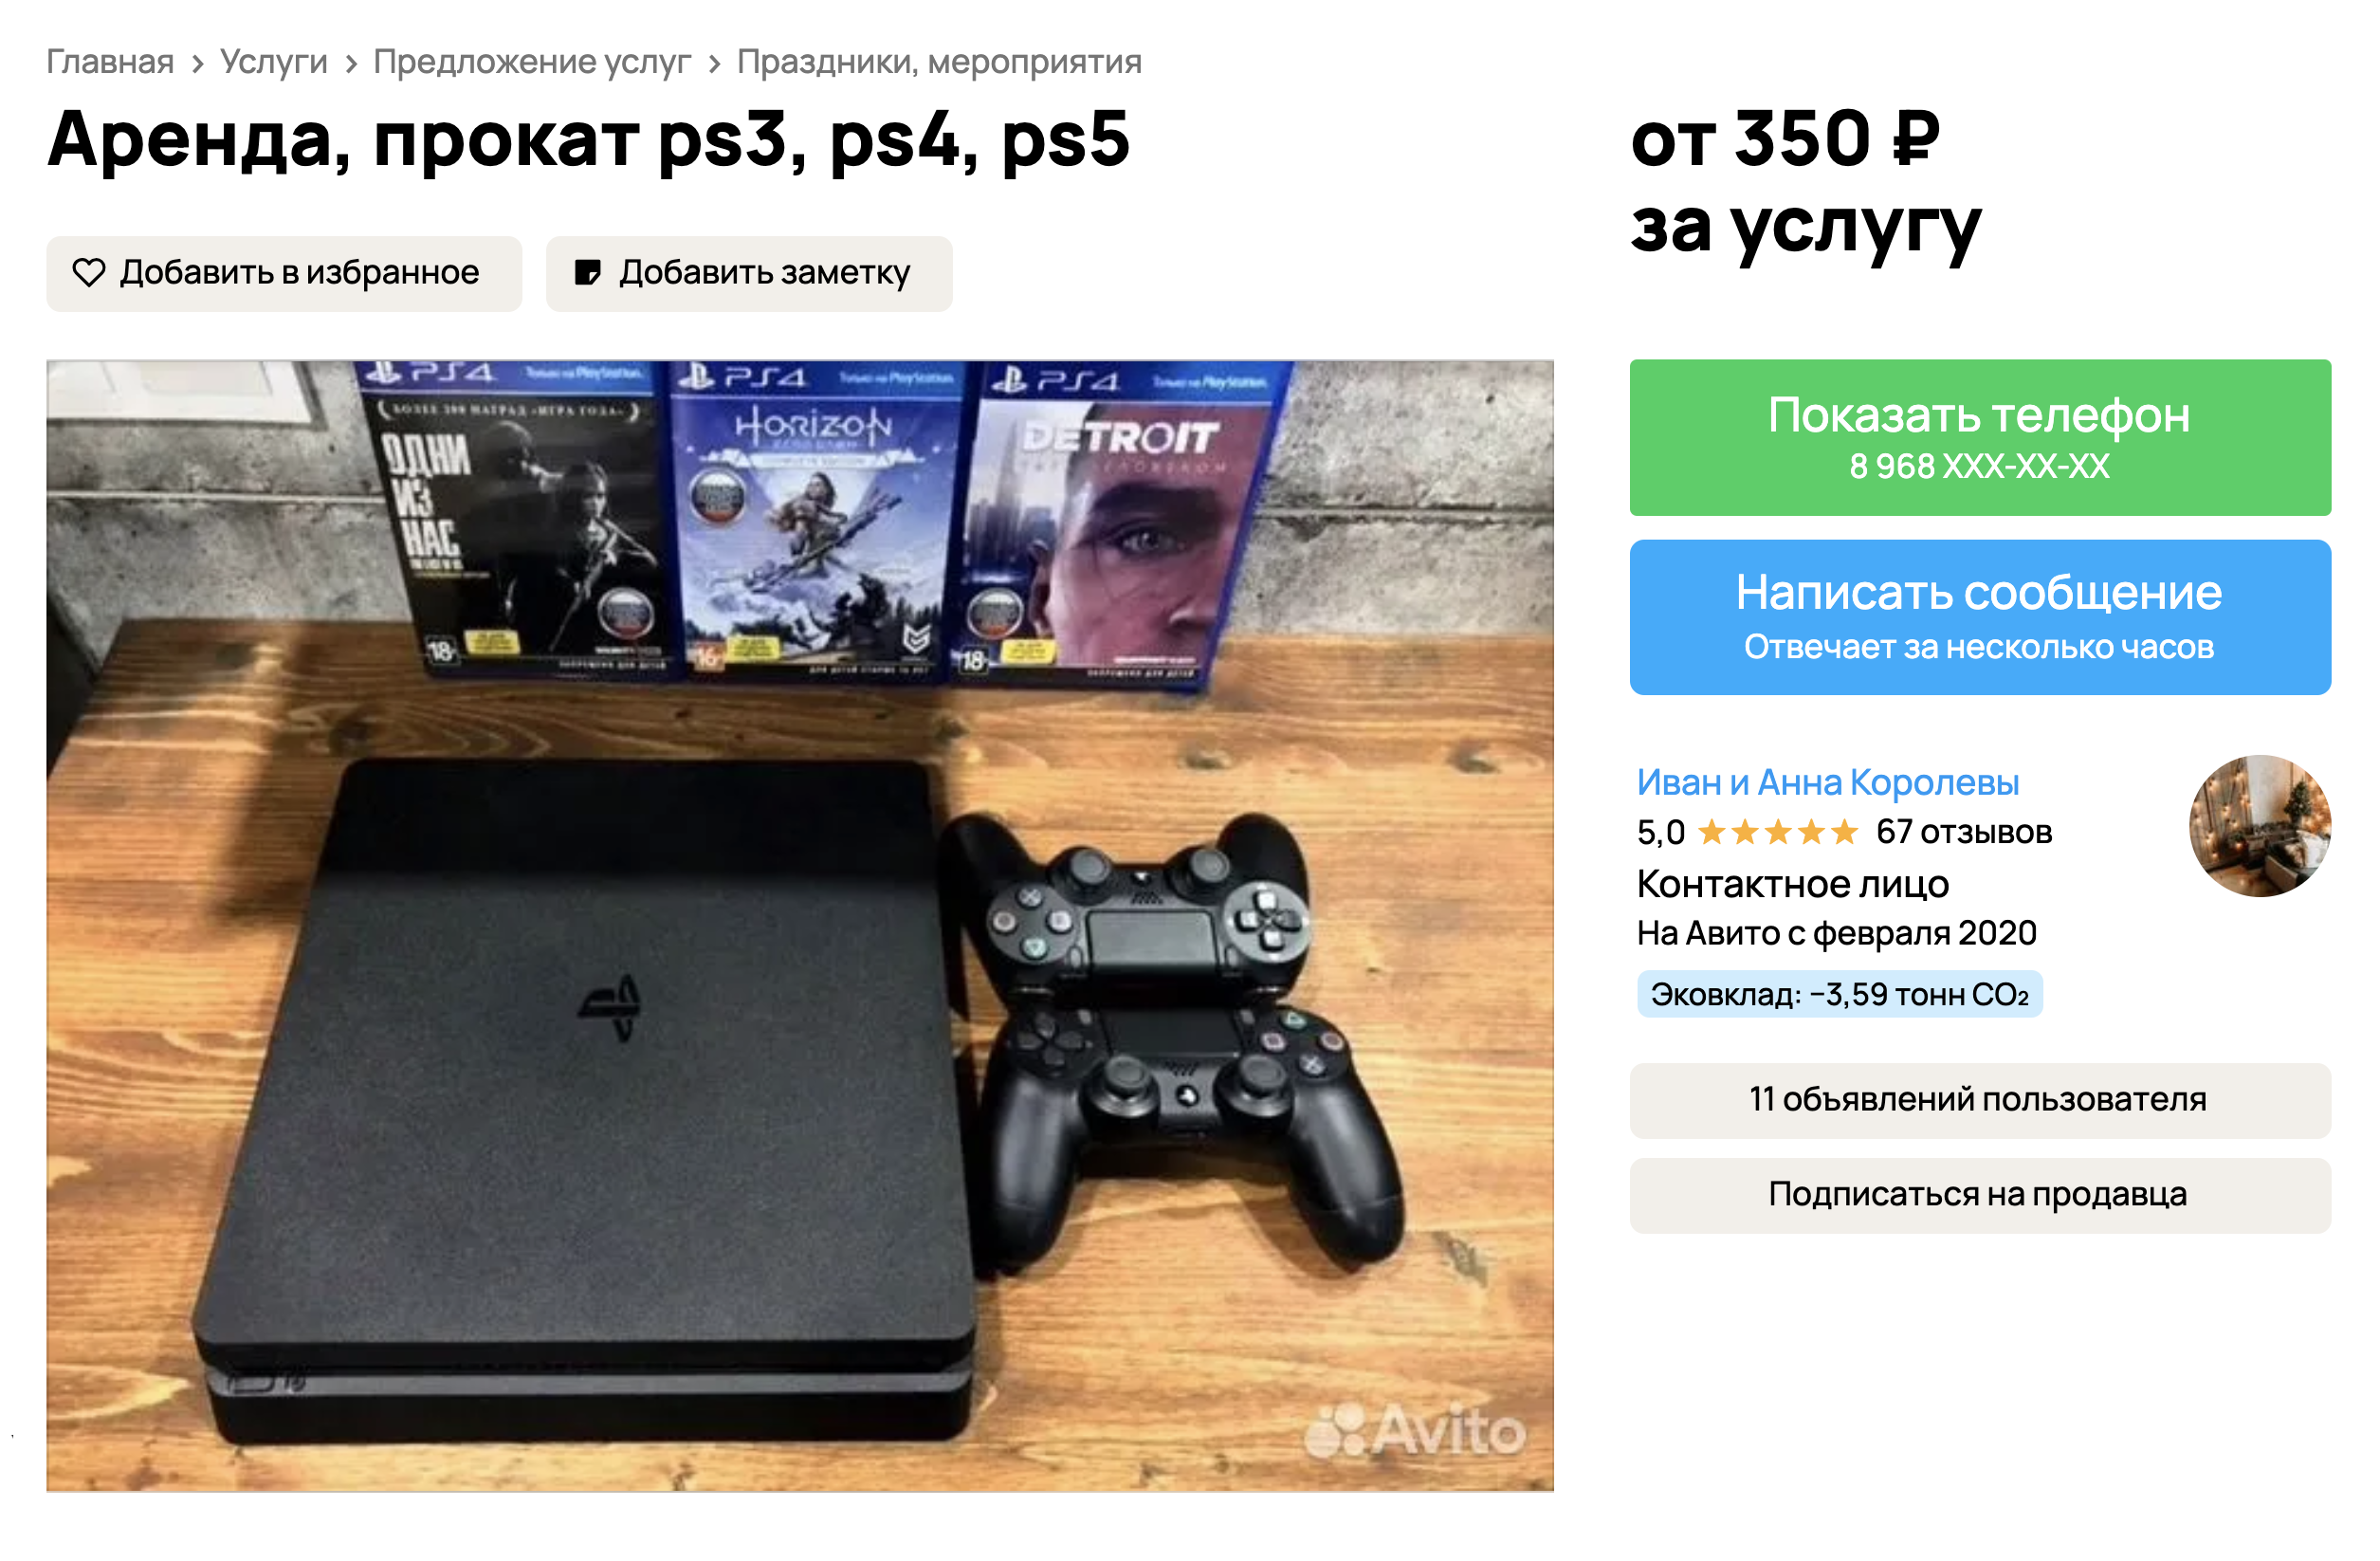 Типичное объявление о сдаче консоли в аренду. PS3 можно взять за 490 ₽ в сутки, но обычно не меньше чем на двое суток подряд. Источник: avito.ru